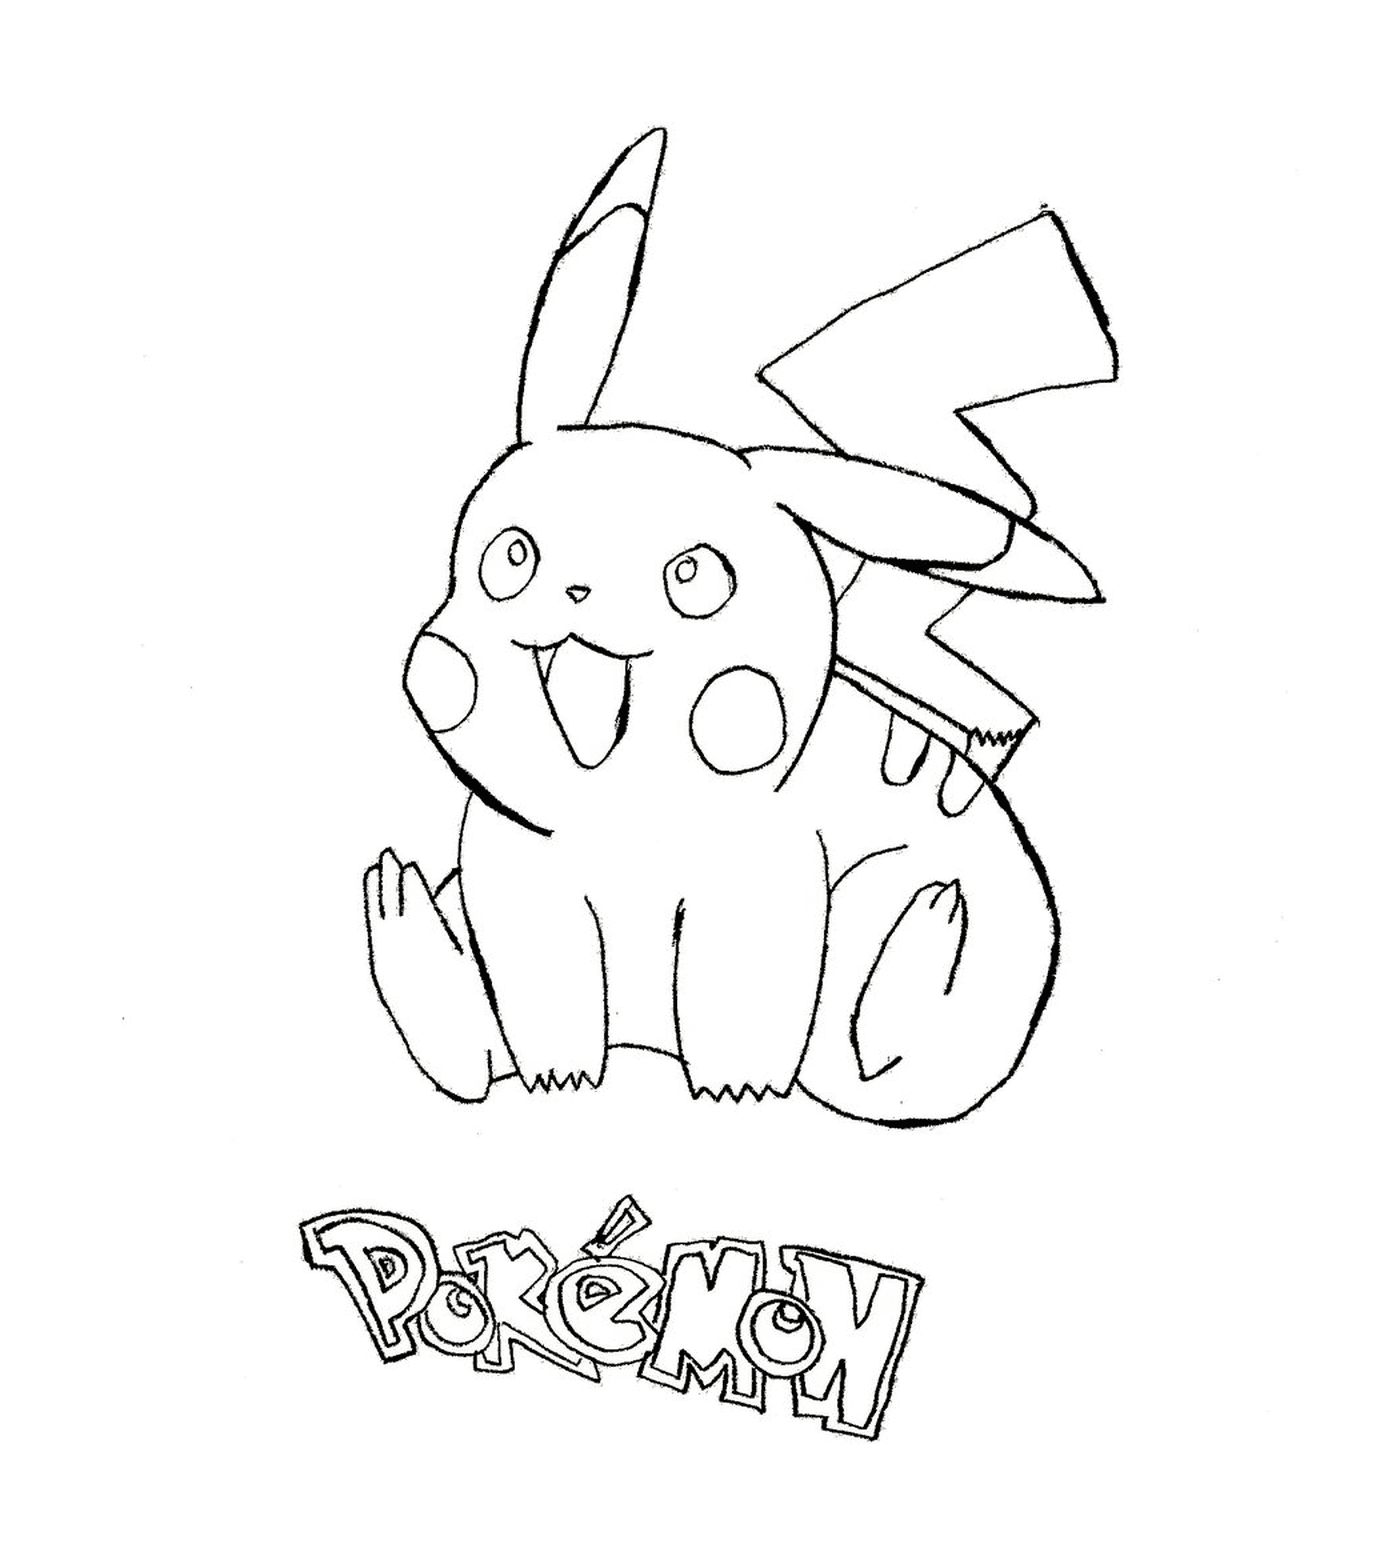   Pikachu, un Pokémon adorable 